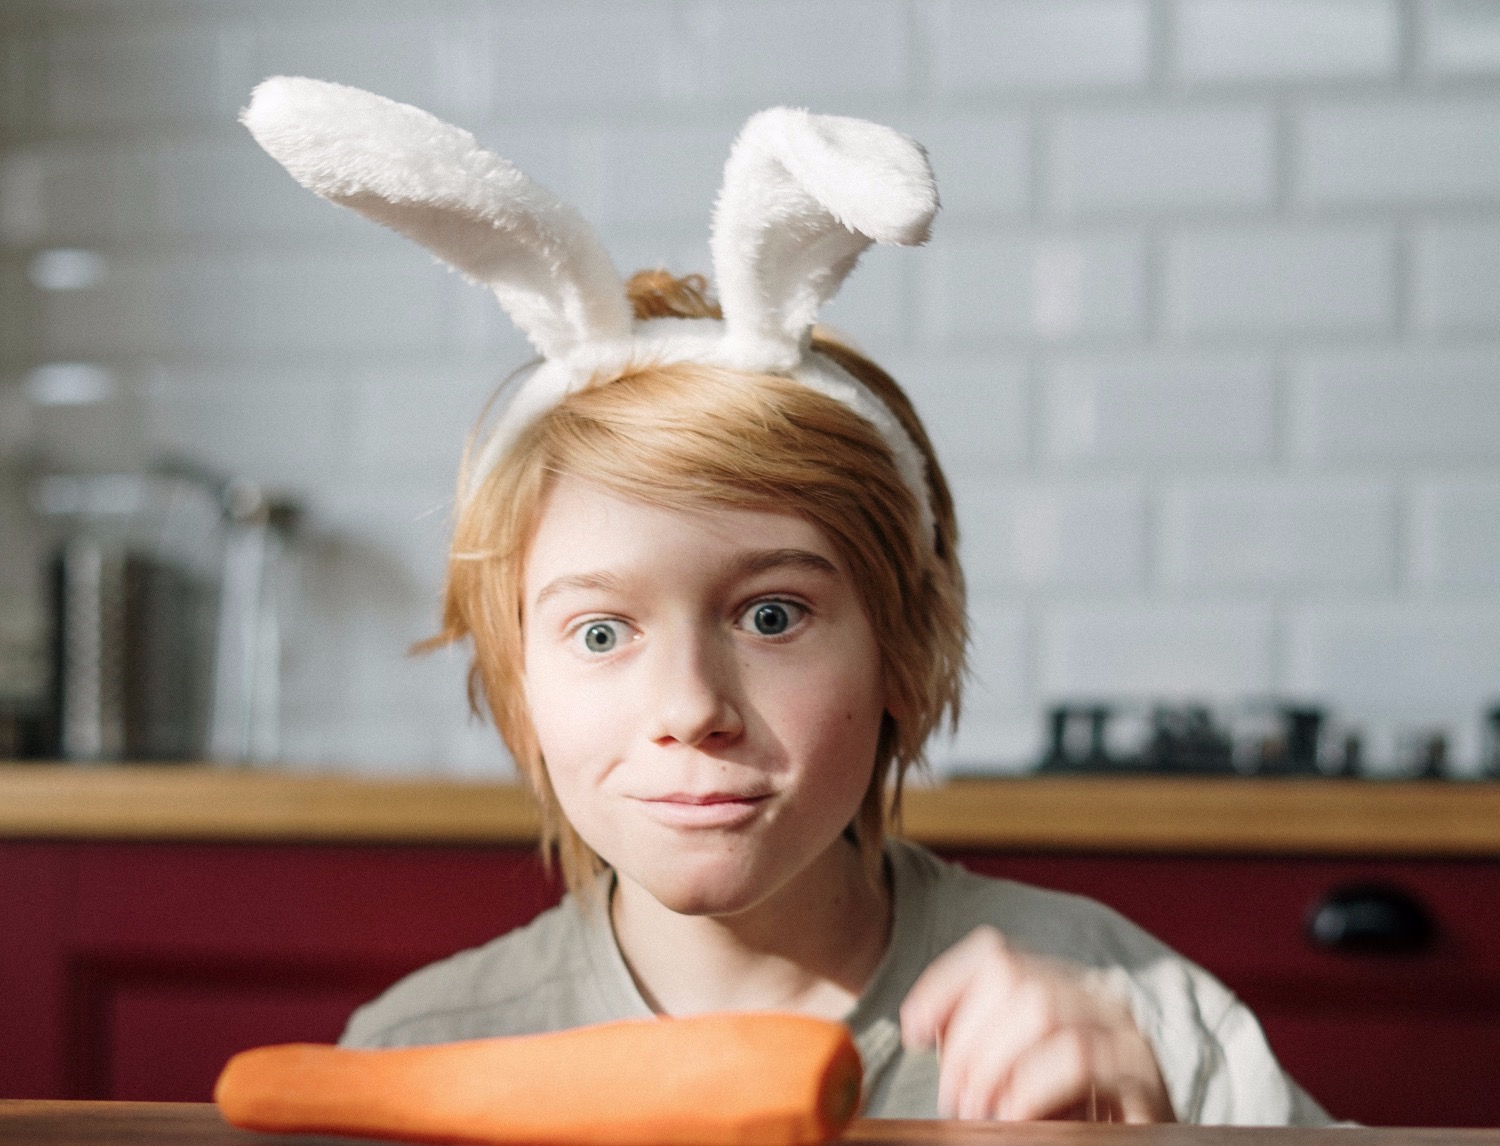 Titelbild zur Idee für die Beschäftigung mit Kindern 'Verkleidung Hase – Hasenohren nähen'